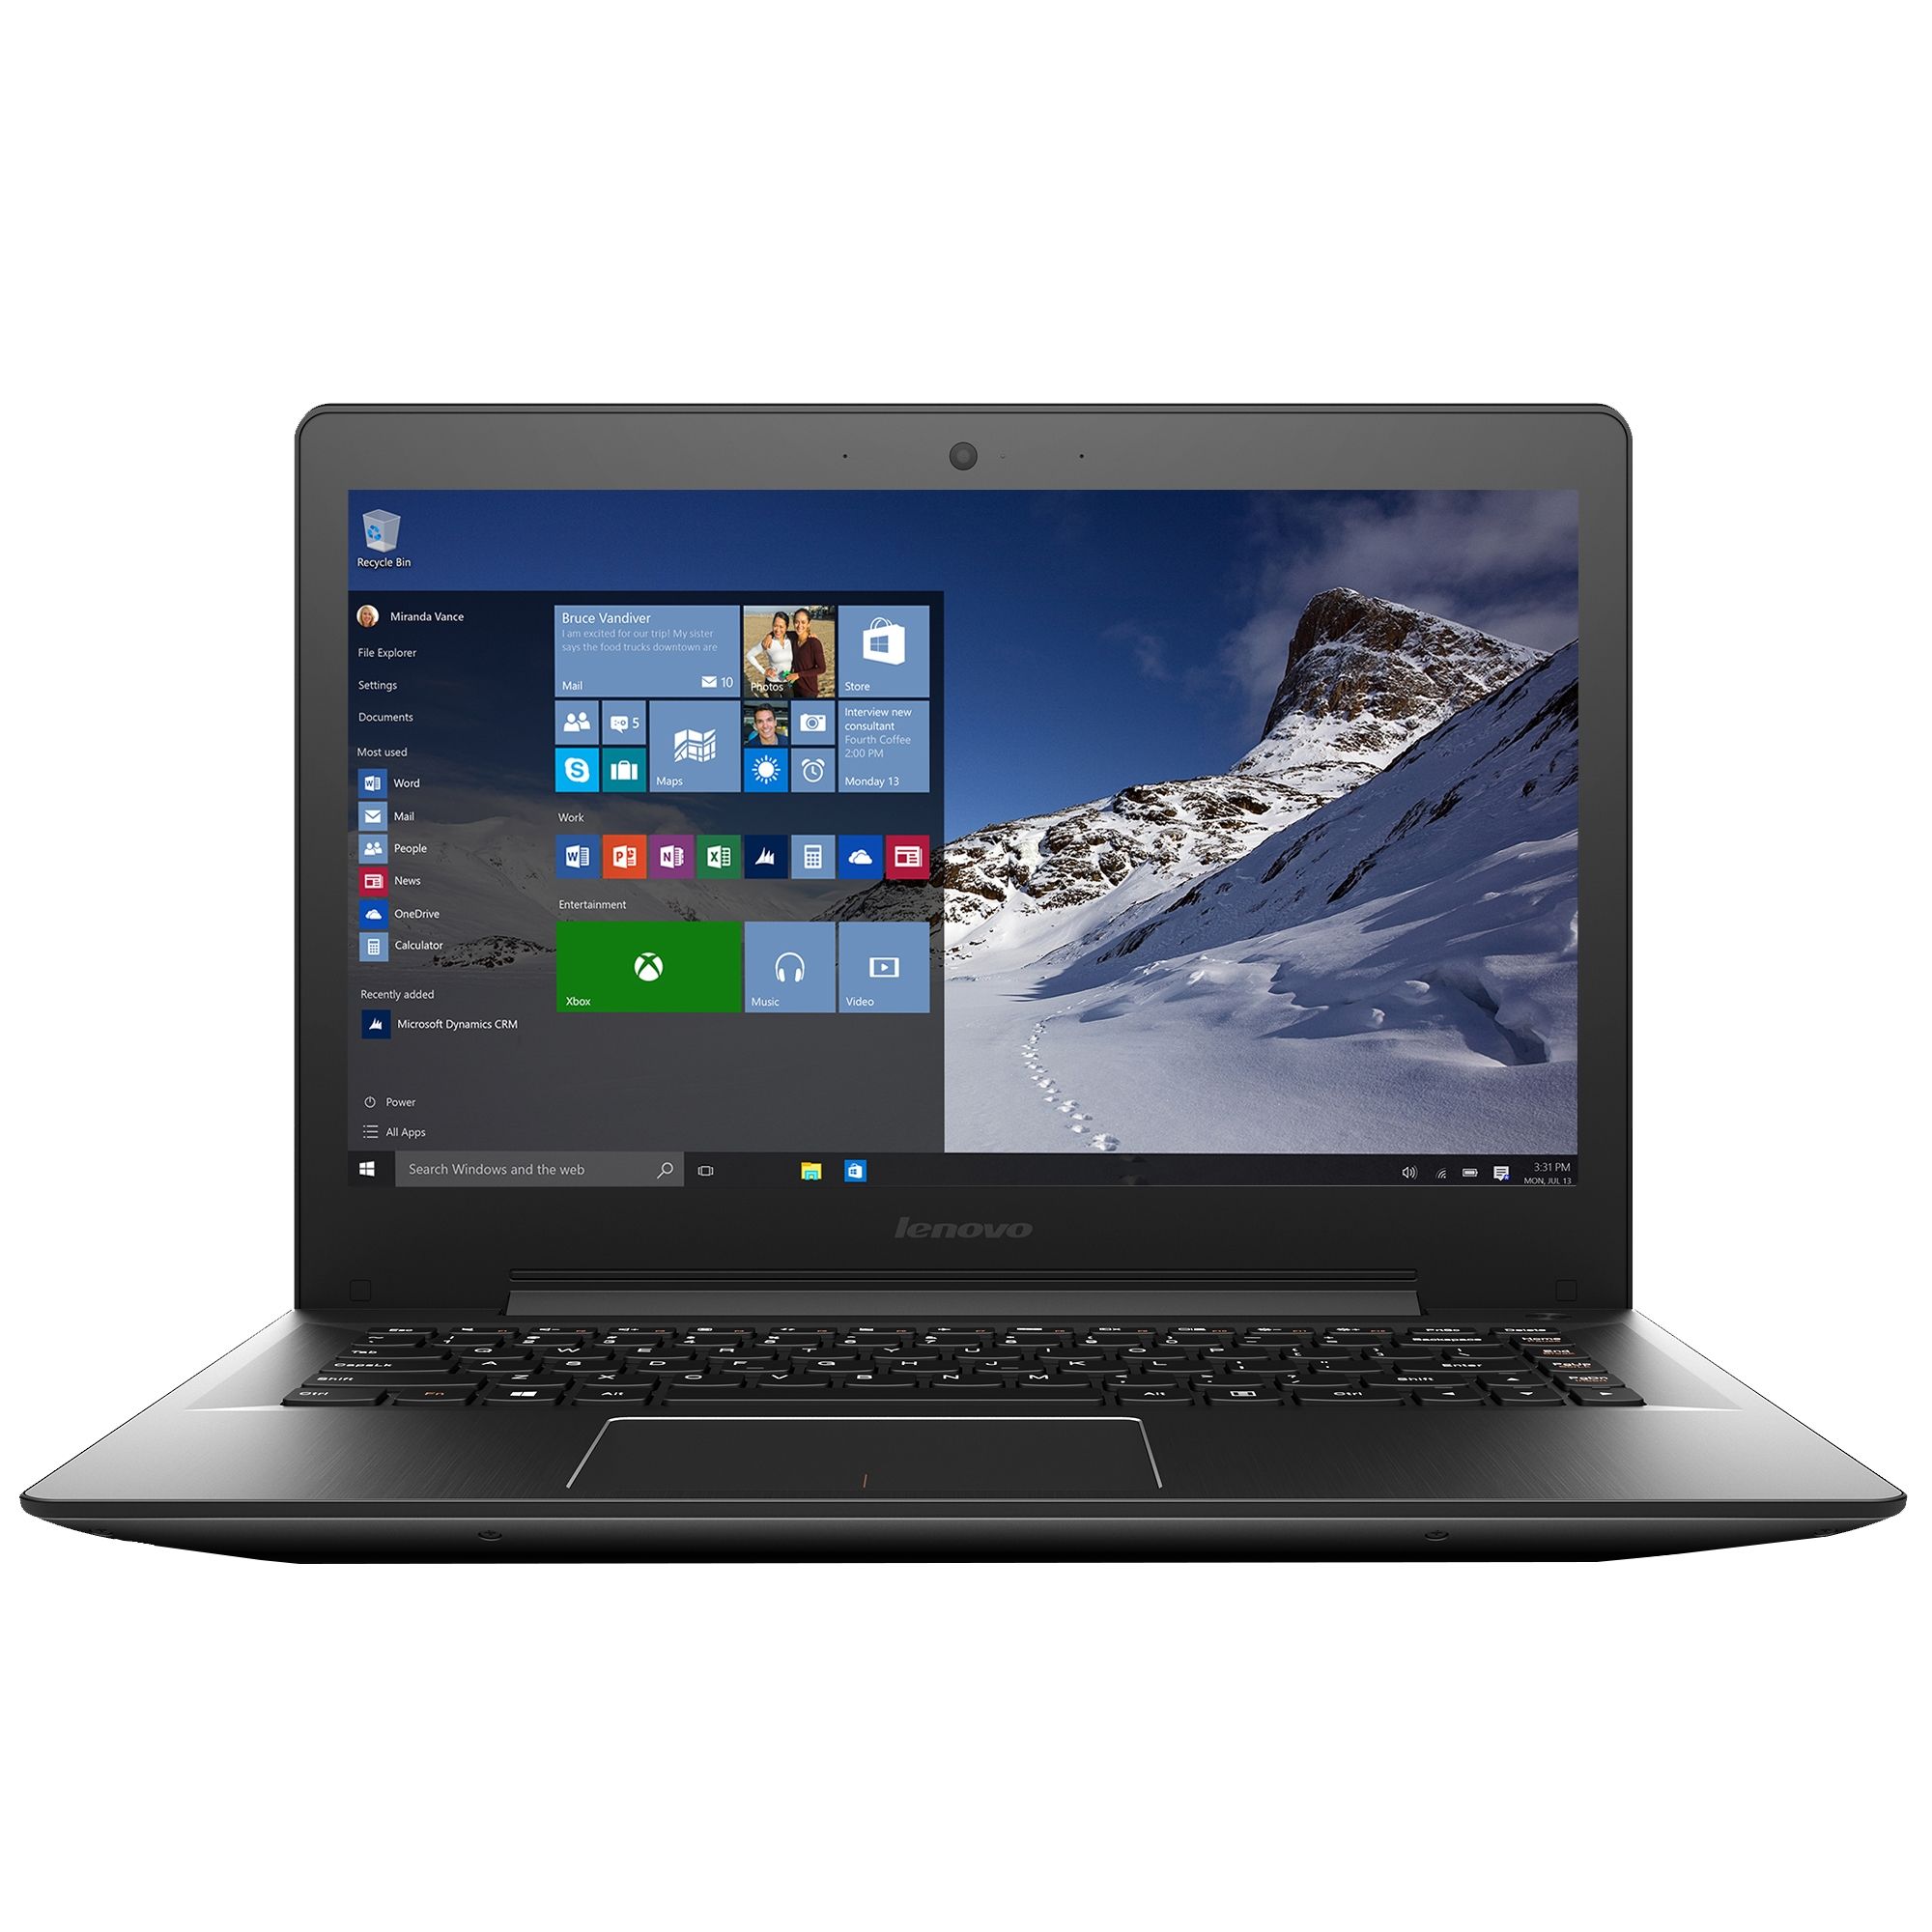  Laptop Lenovo IdeaPad U41-70, Intel Core i5-5200U, 4GB DDR3, SSHD 1TB + 8 GB, nVidia GeForce GT 920M 2GB, Windows 10 